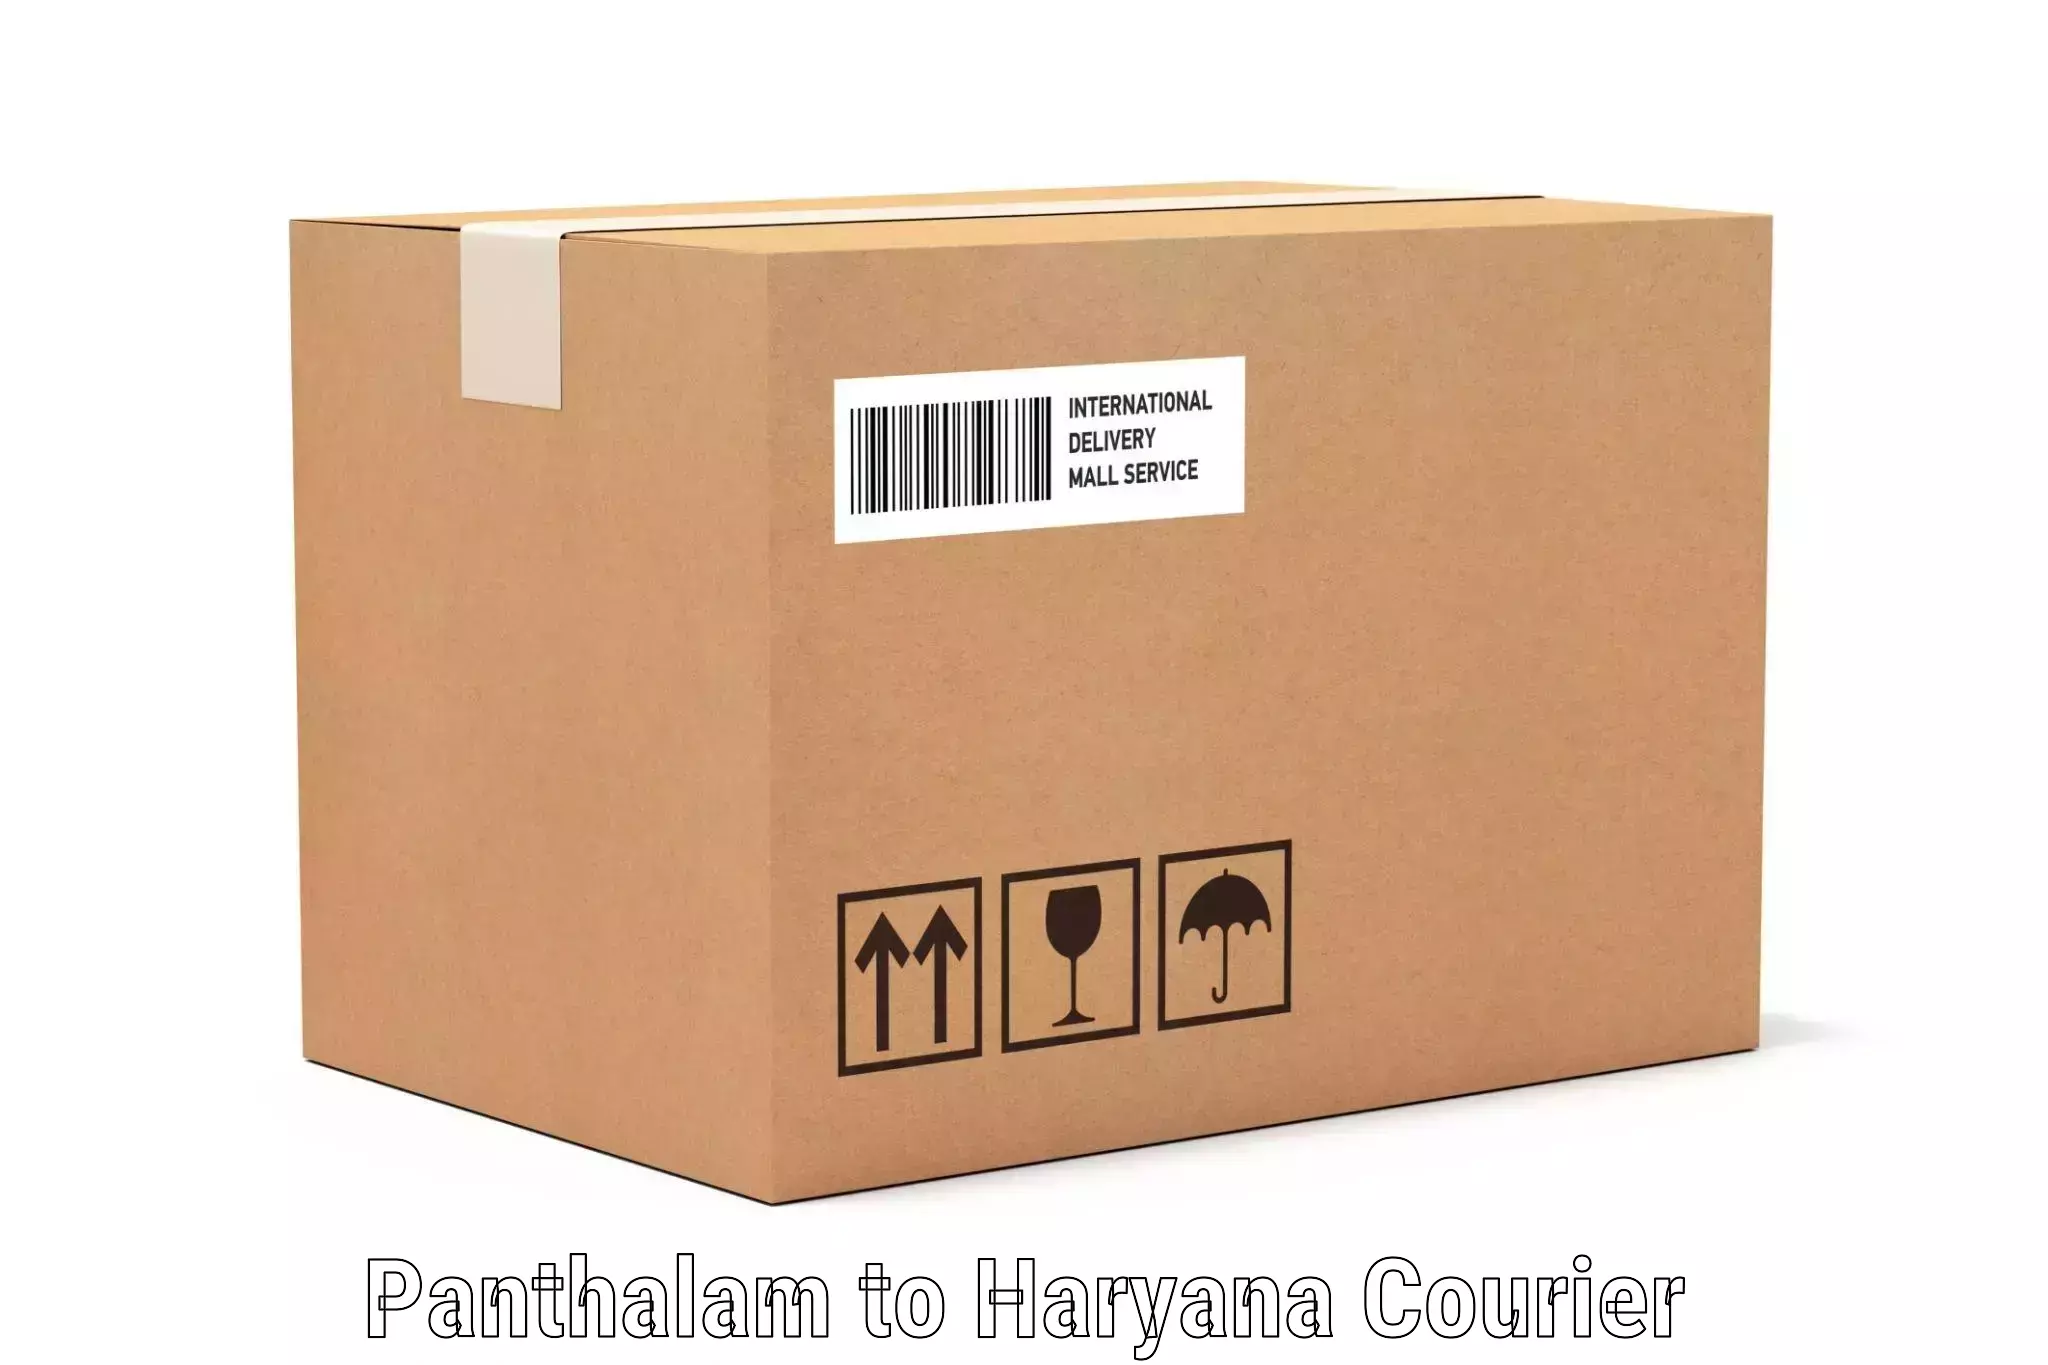 Luggage transport logistics Panthalam to NCR Haryana